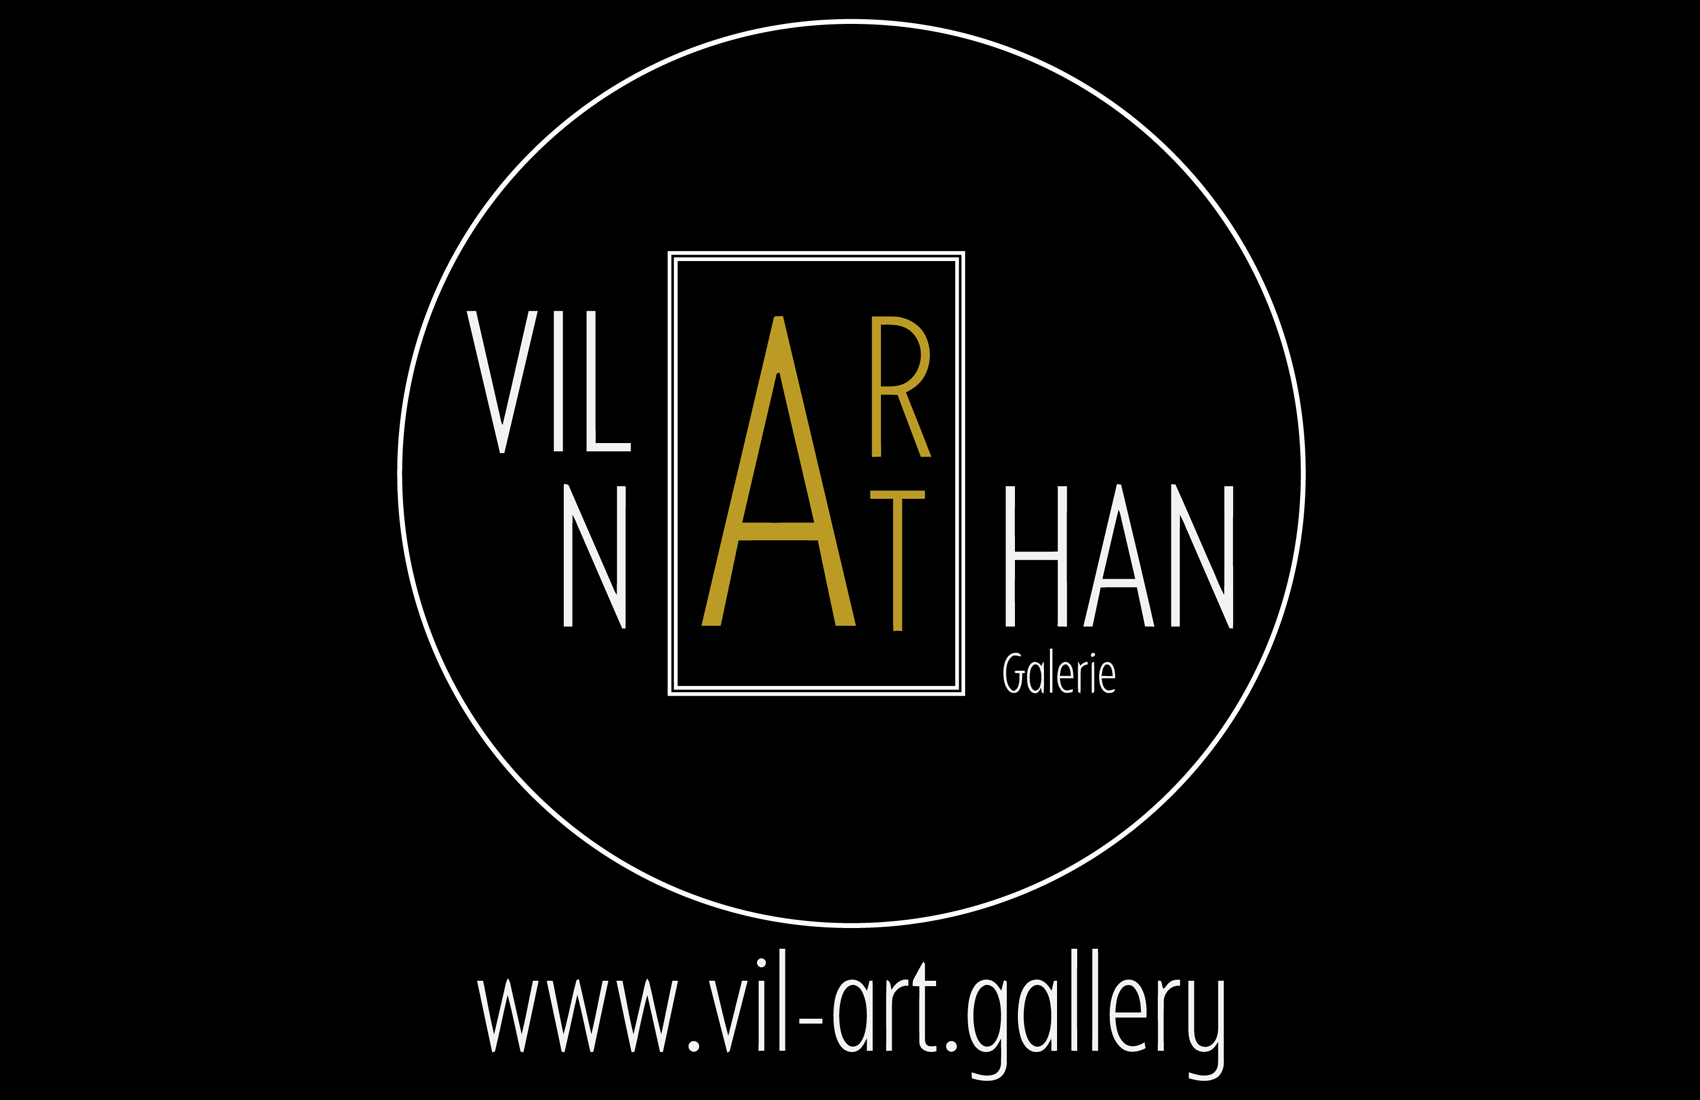 Vilar Nathan Galerie